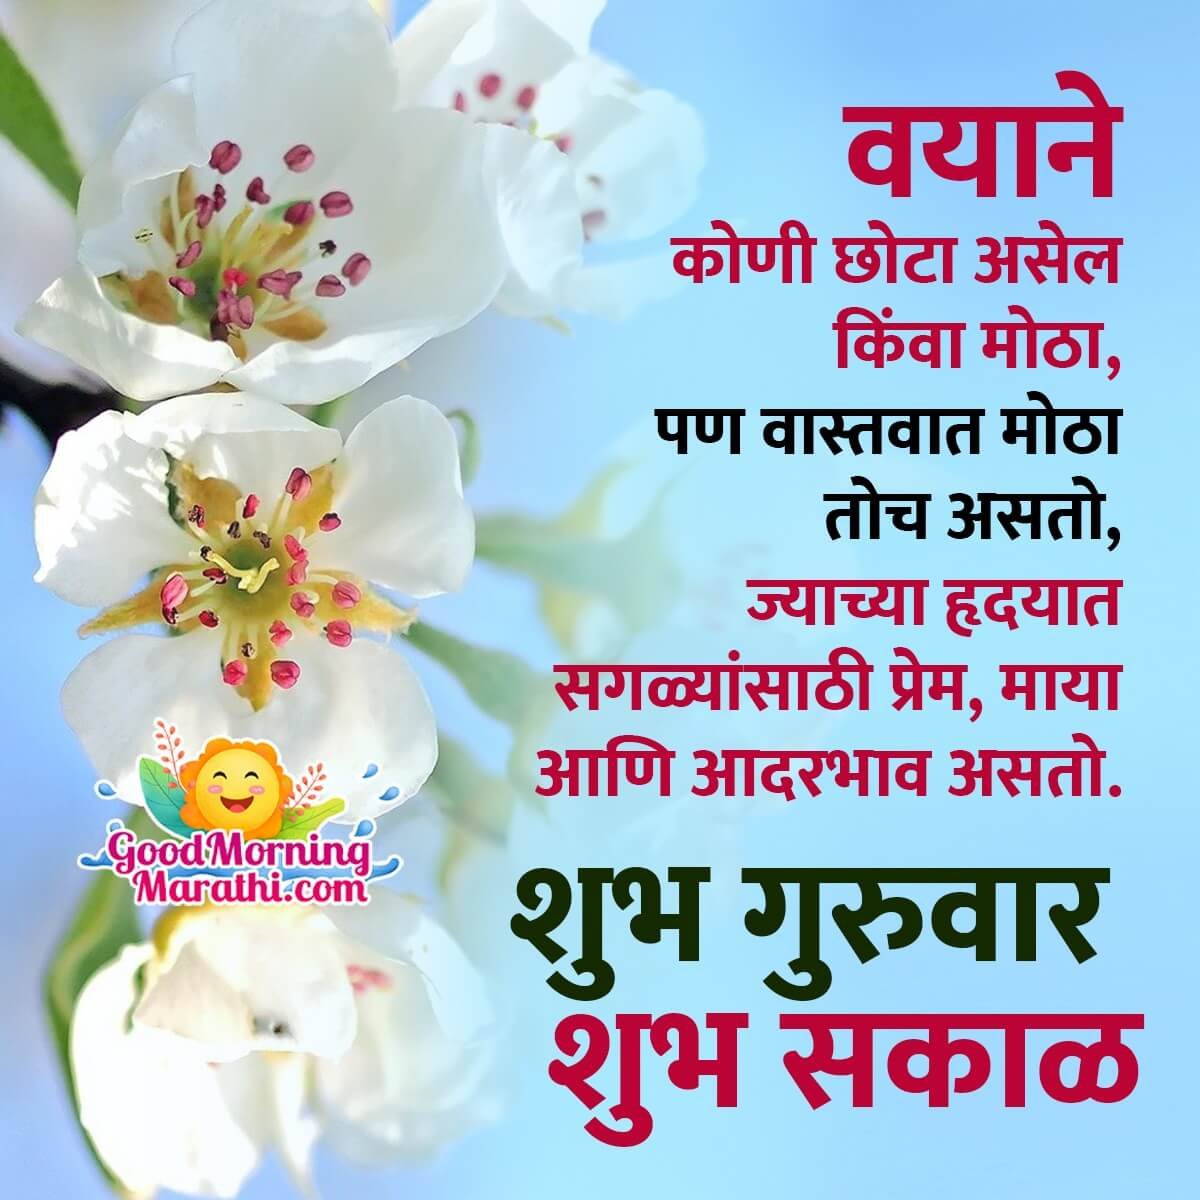 Shubh Guruwar Shubh Sawar Message In Marathi